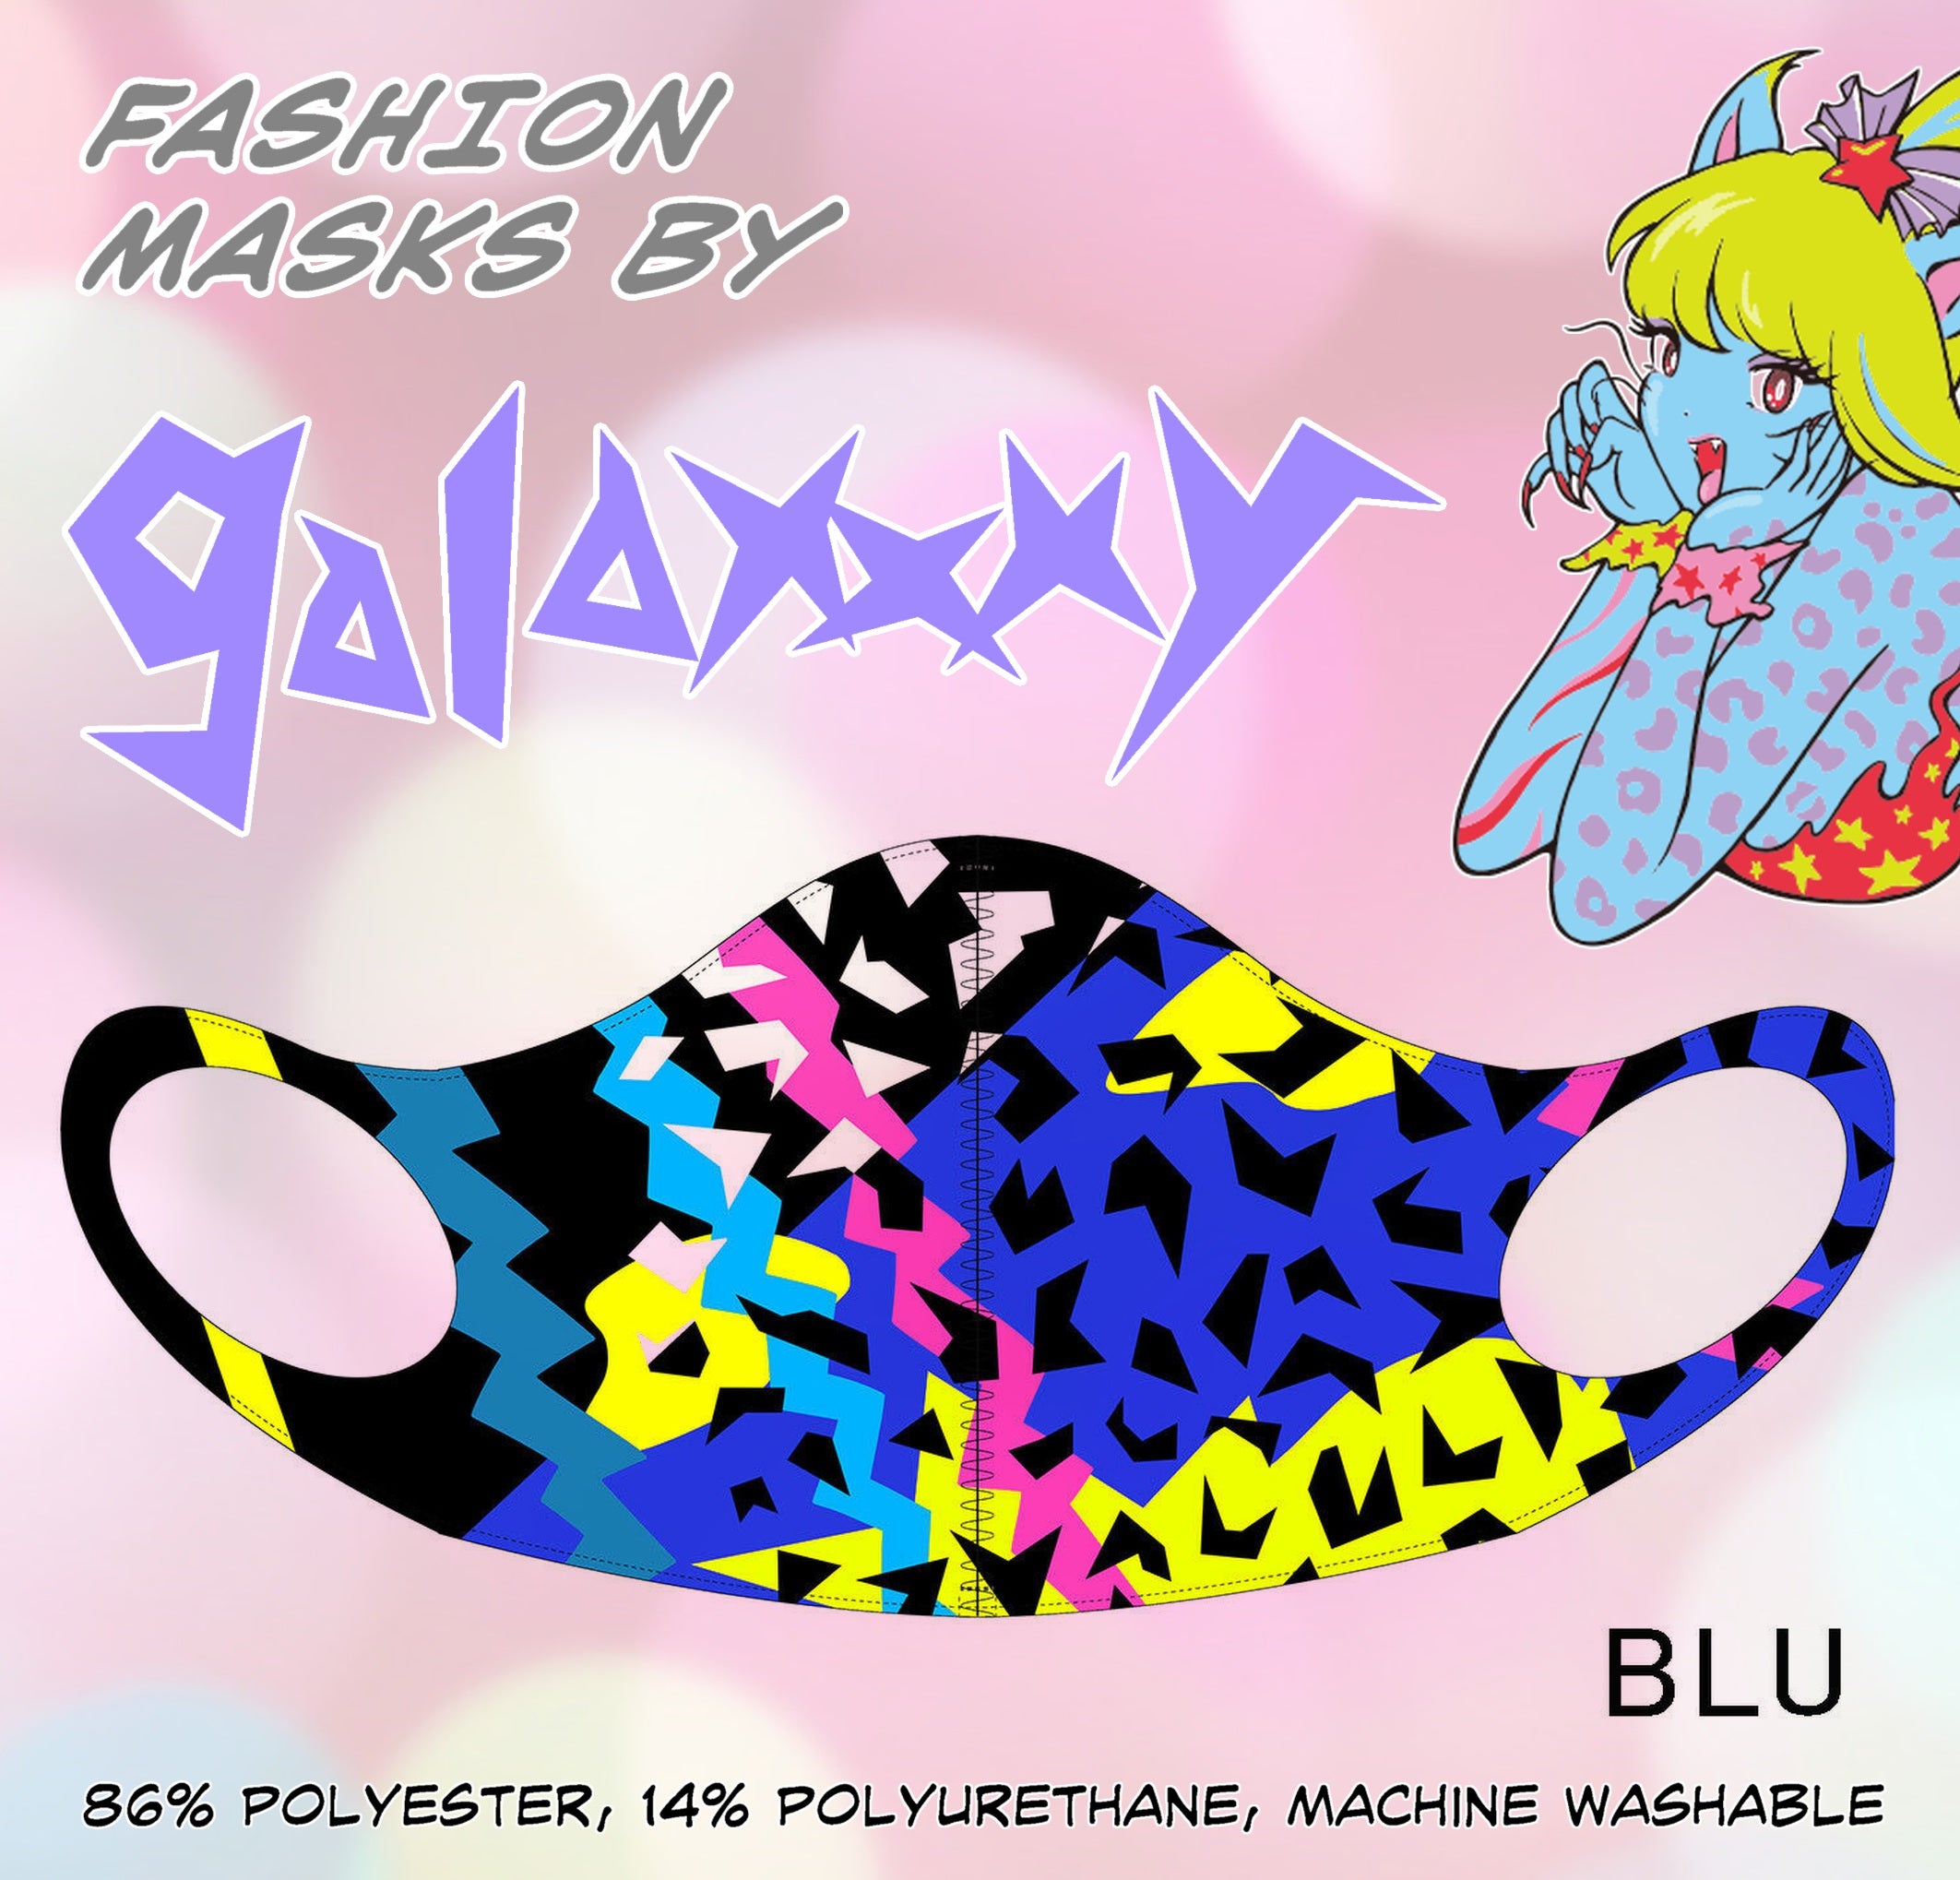 BLU Fashion Mask by galaxxxy